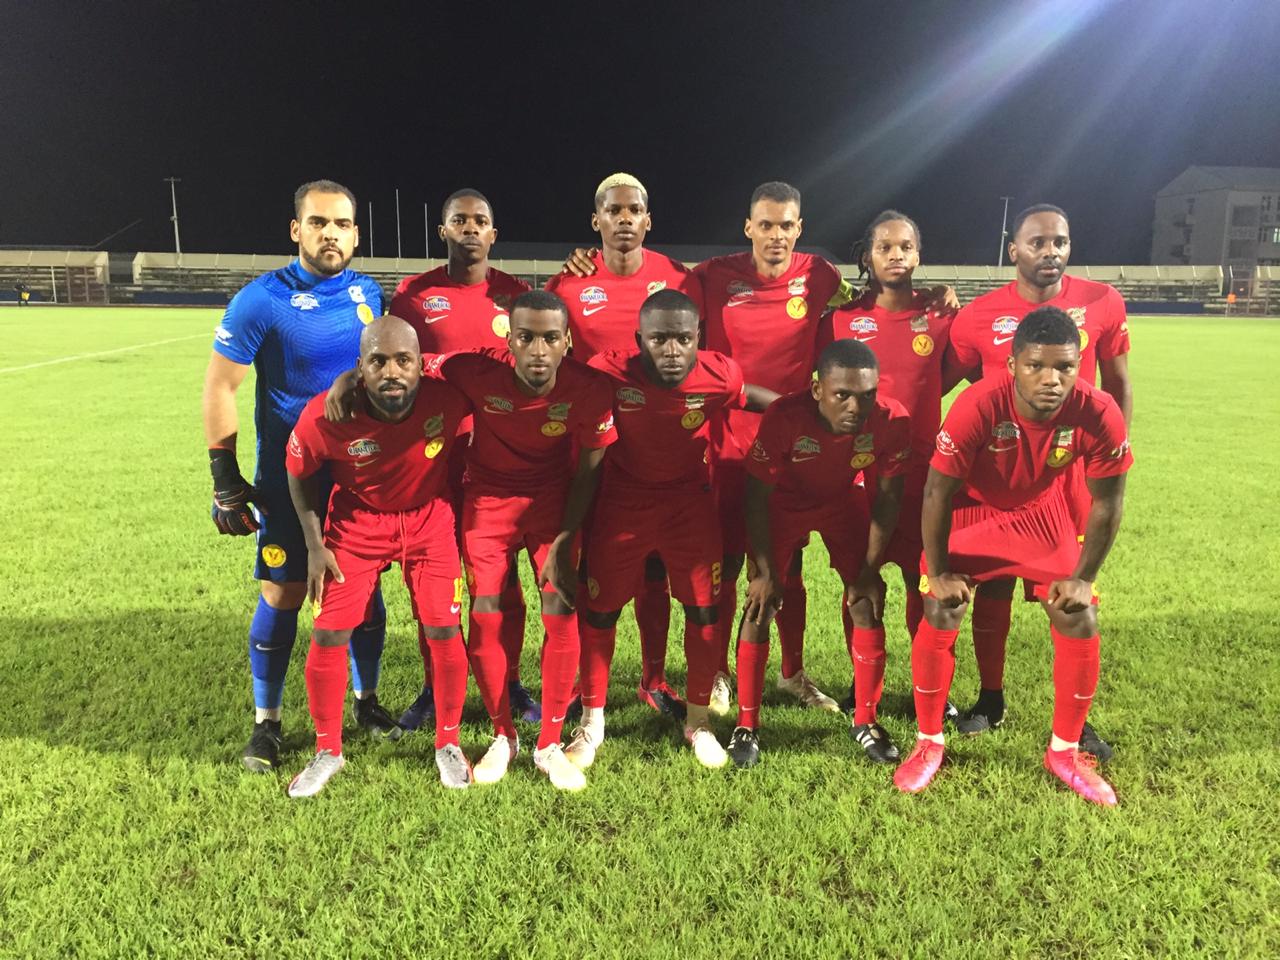     Coupe de Martinique : l'Aiglon corrige le New Club 10 - 0

